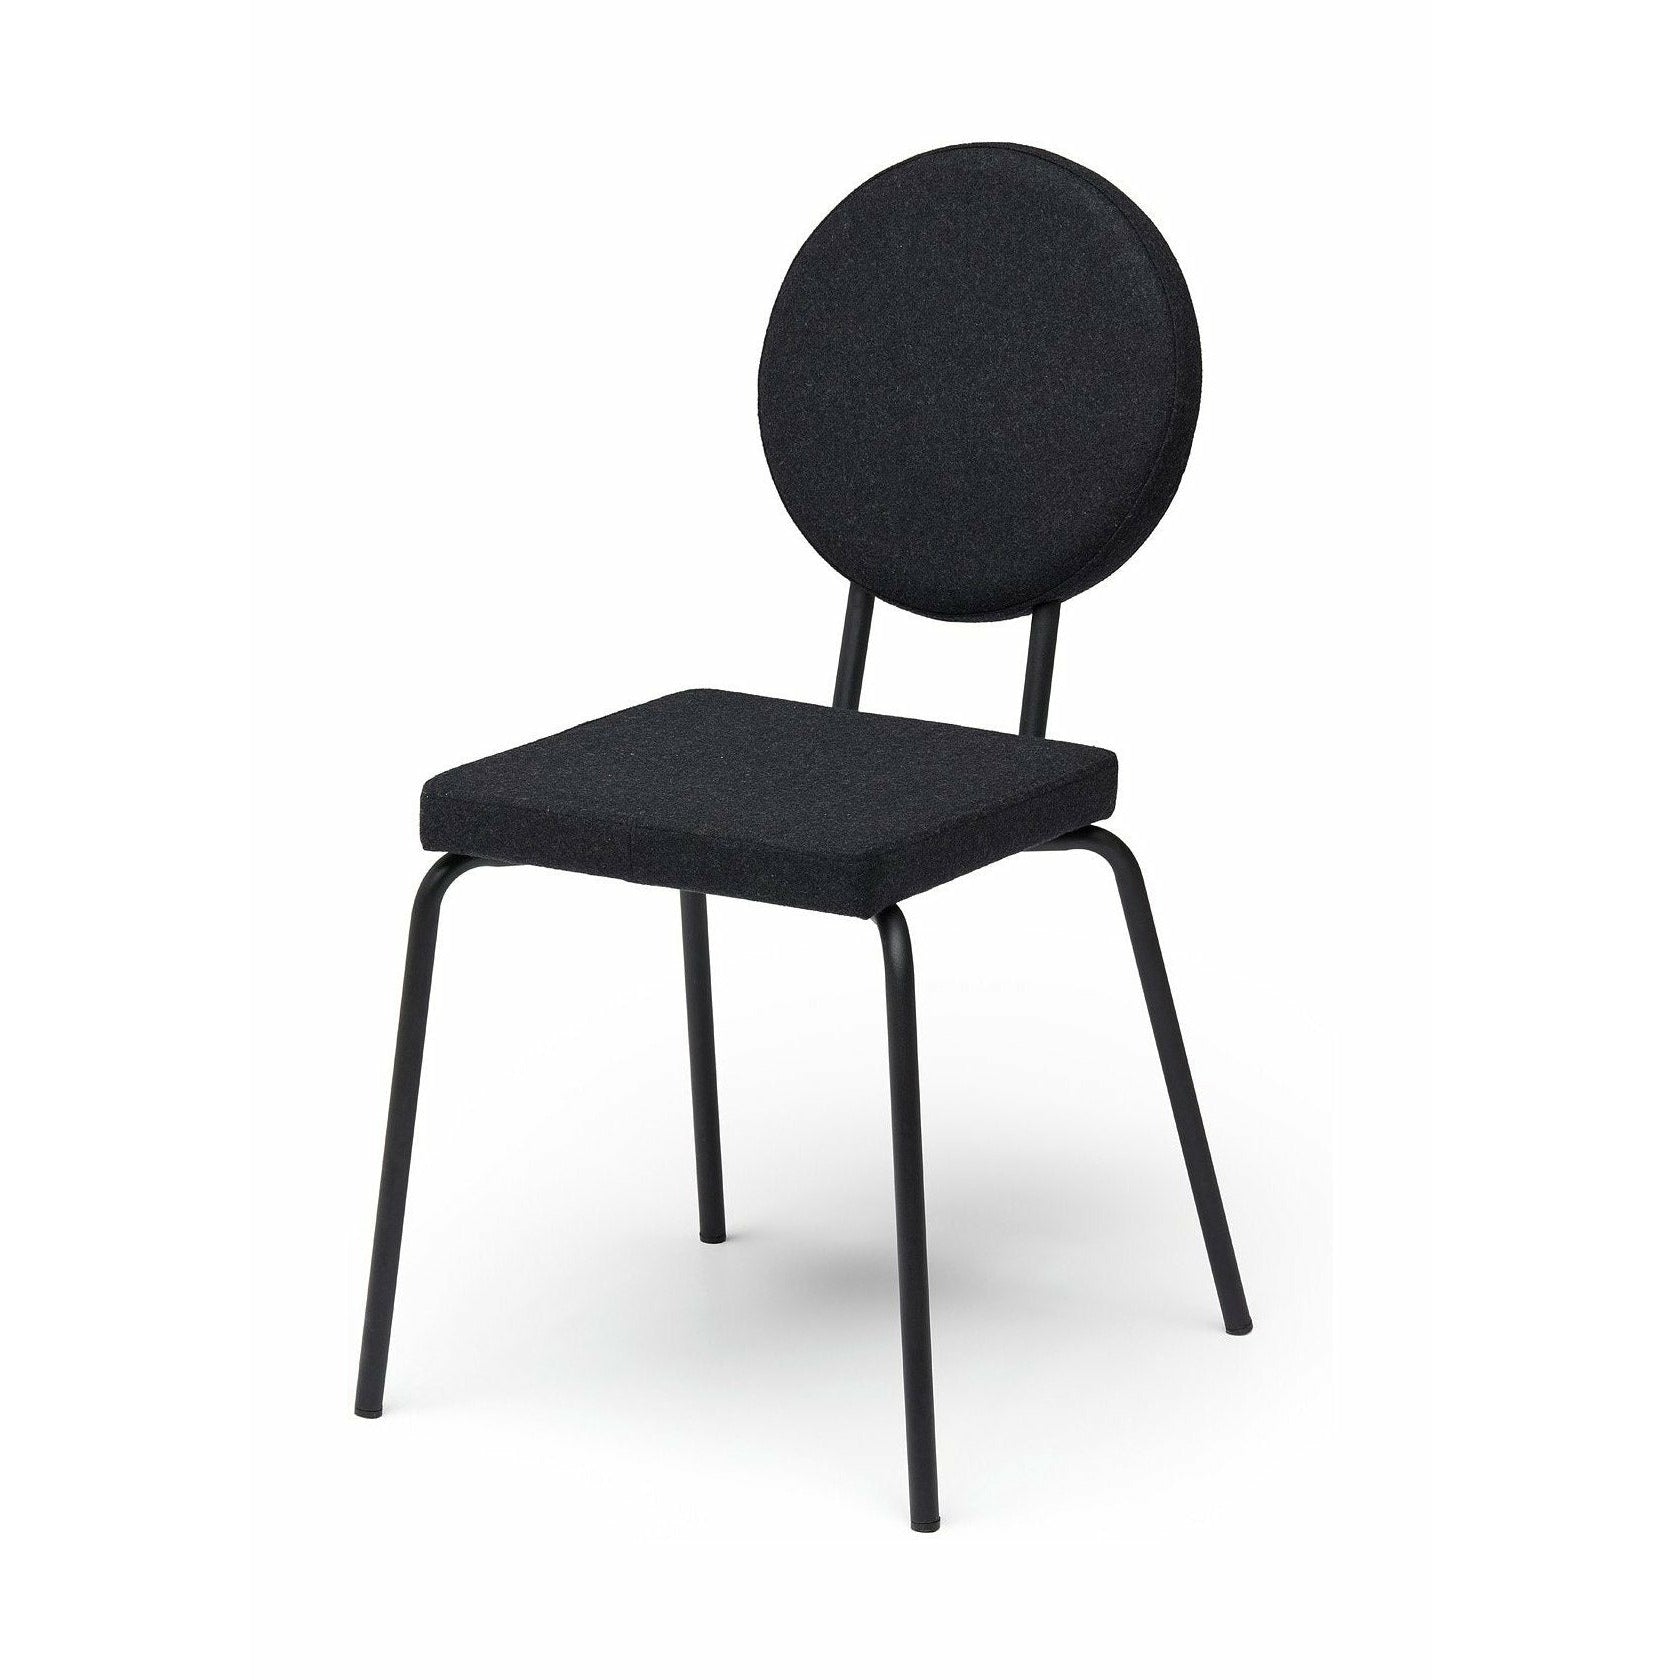 Puik Option Stol sæde firkant / ryglæn runde, sort